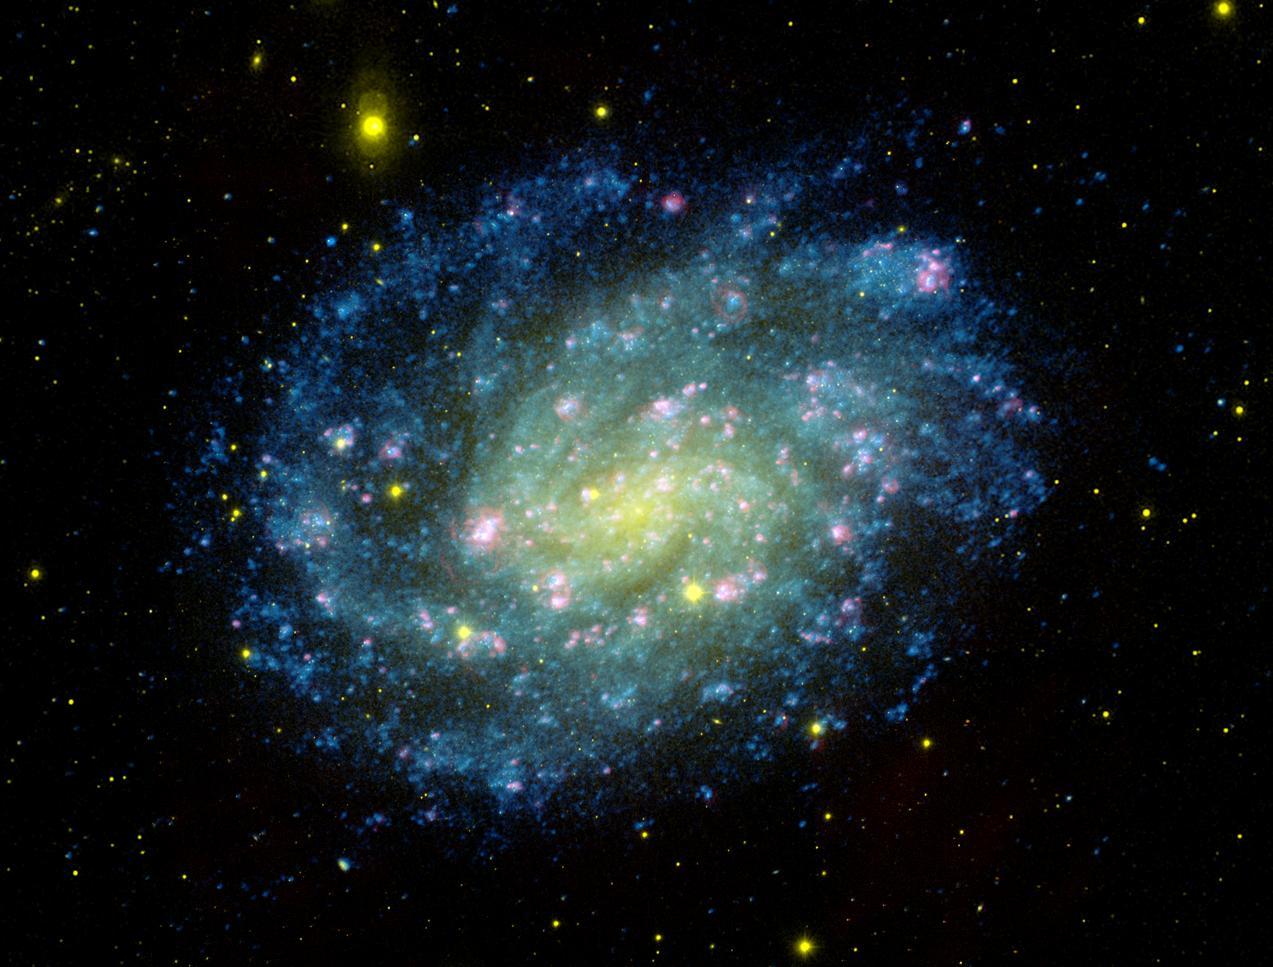 Imagem de uma galáxia espiral com braços espirais pontilhados de estrelas azuis de intensidade variável. O núcleo da galáxia é mais brilhante e é onde as estrelas aparecem verde-amarelo.  A imagem foi tirada pelo satélite Galaxy Evolution Explorer, ou GALEX.